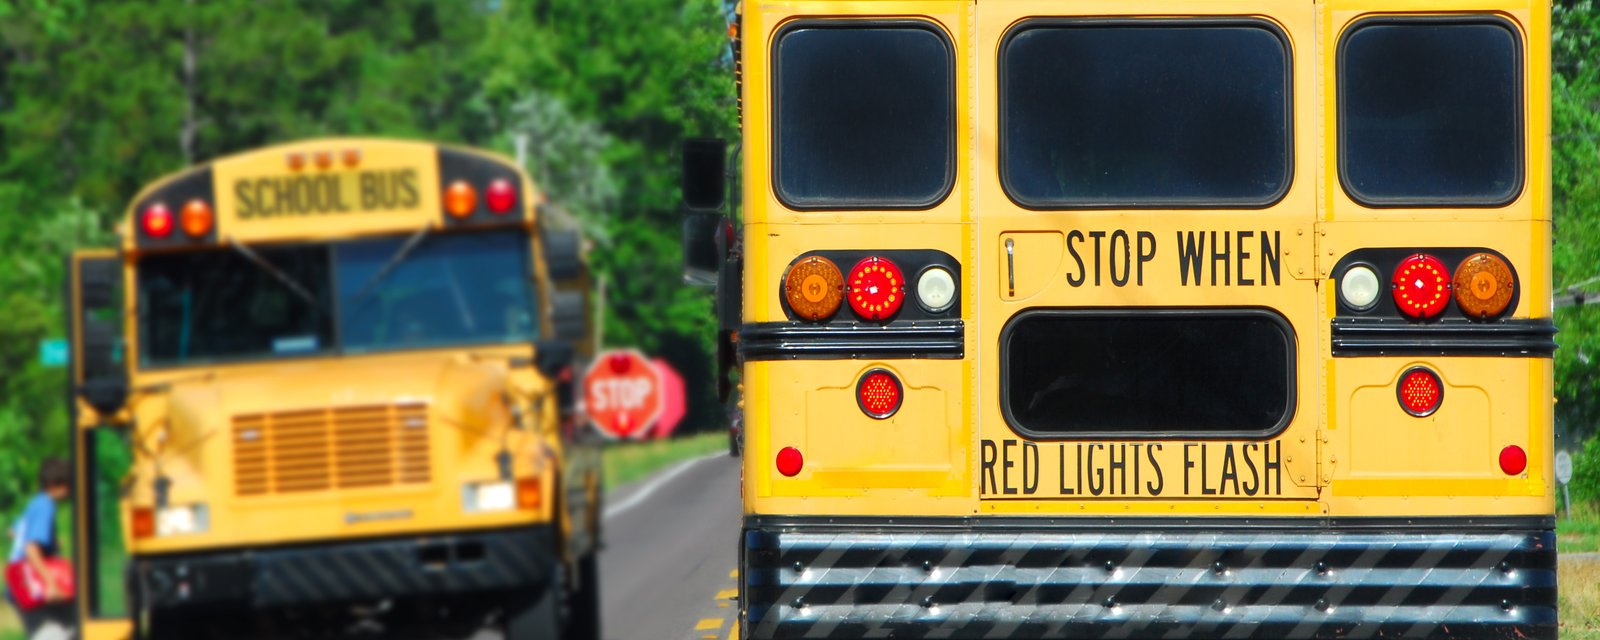 Un ex-chauffeur est accusé d’avoir incendié son bus scolaire avec des enfants à bord.